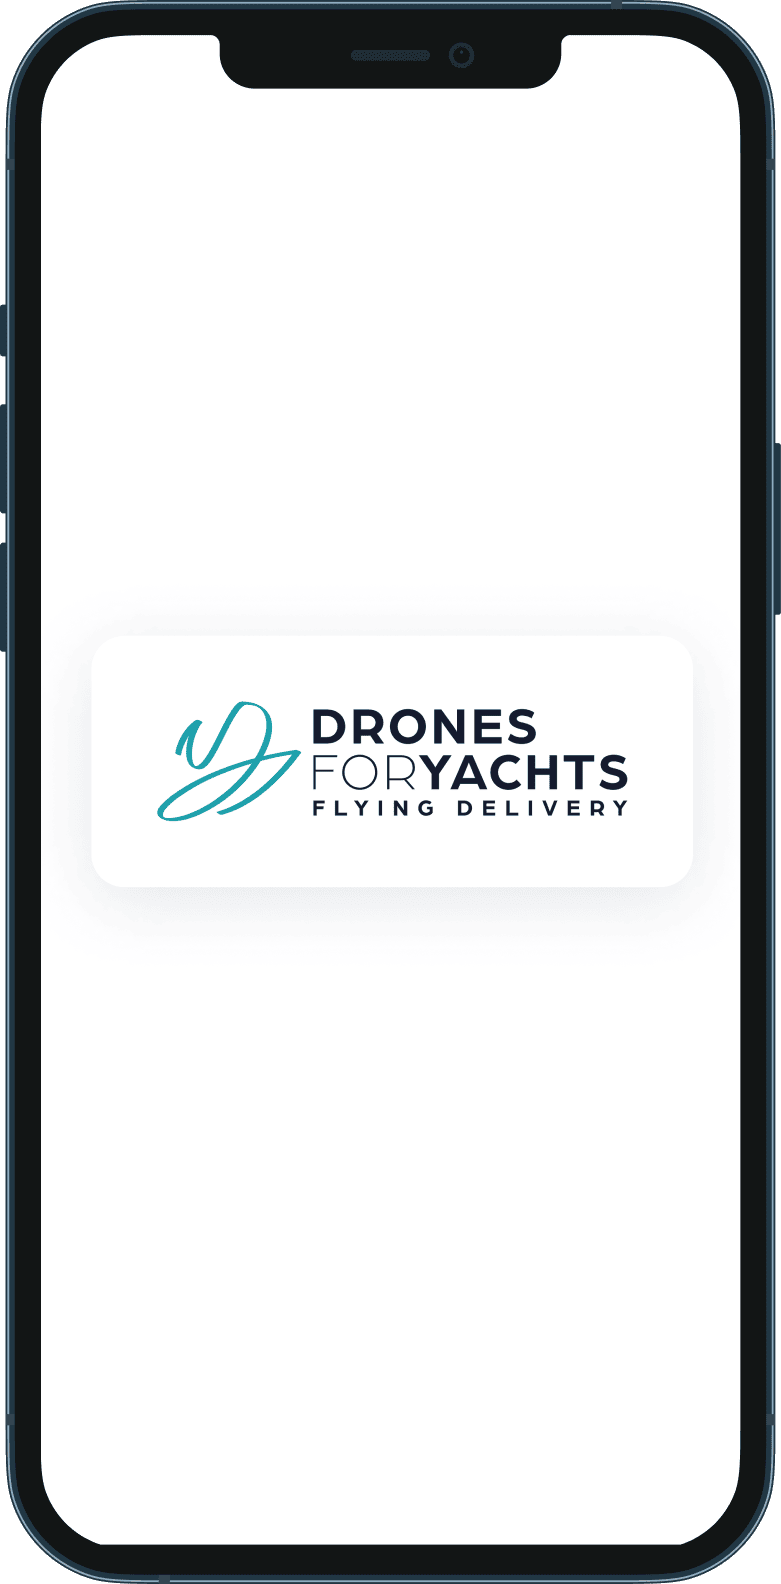 Application mobile de la marketplace Drones for Yachts qui livre les colis par drones sur les yachts 